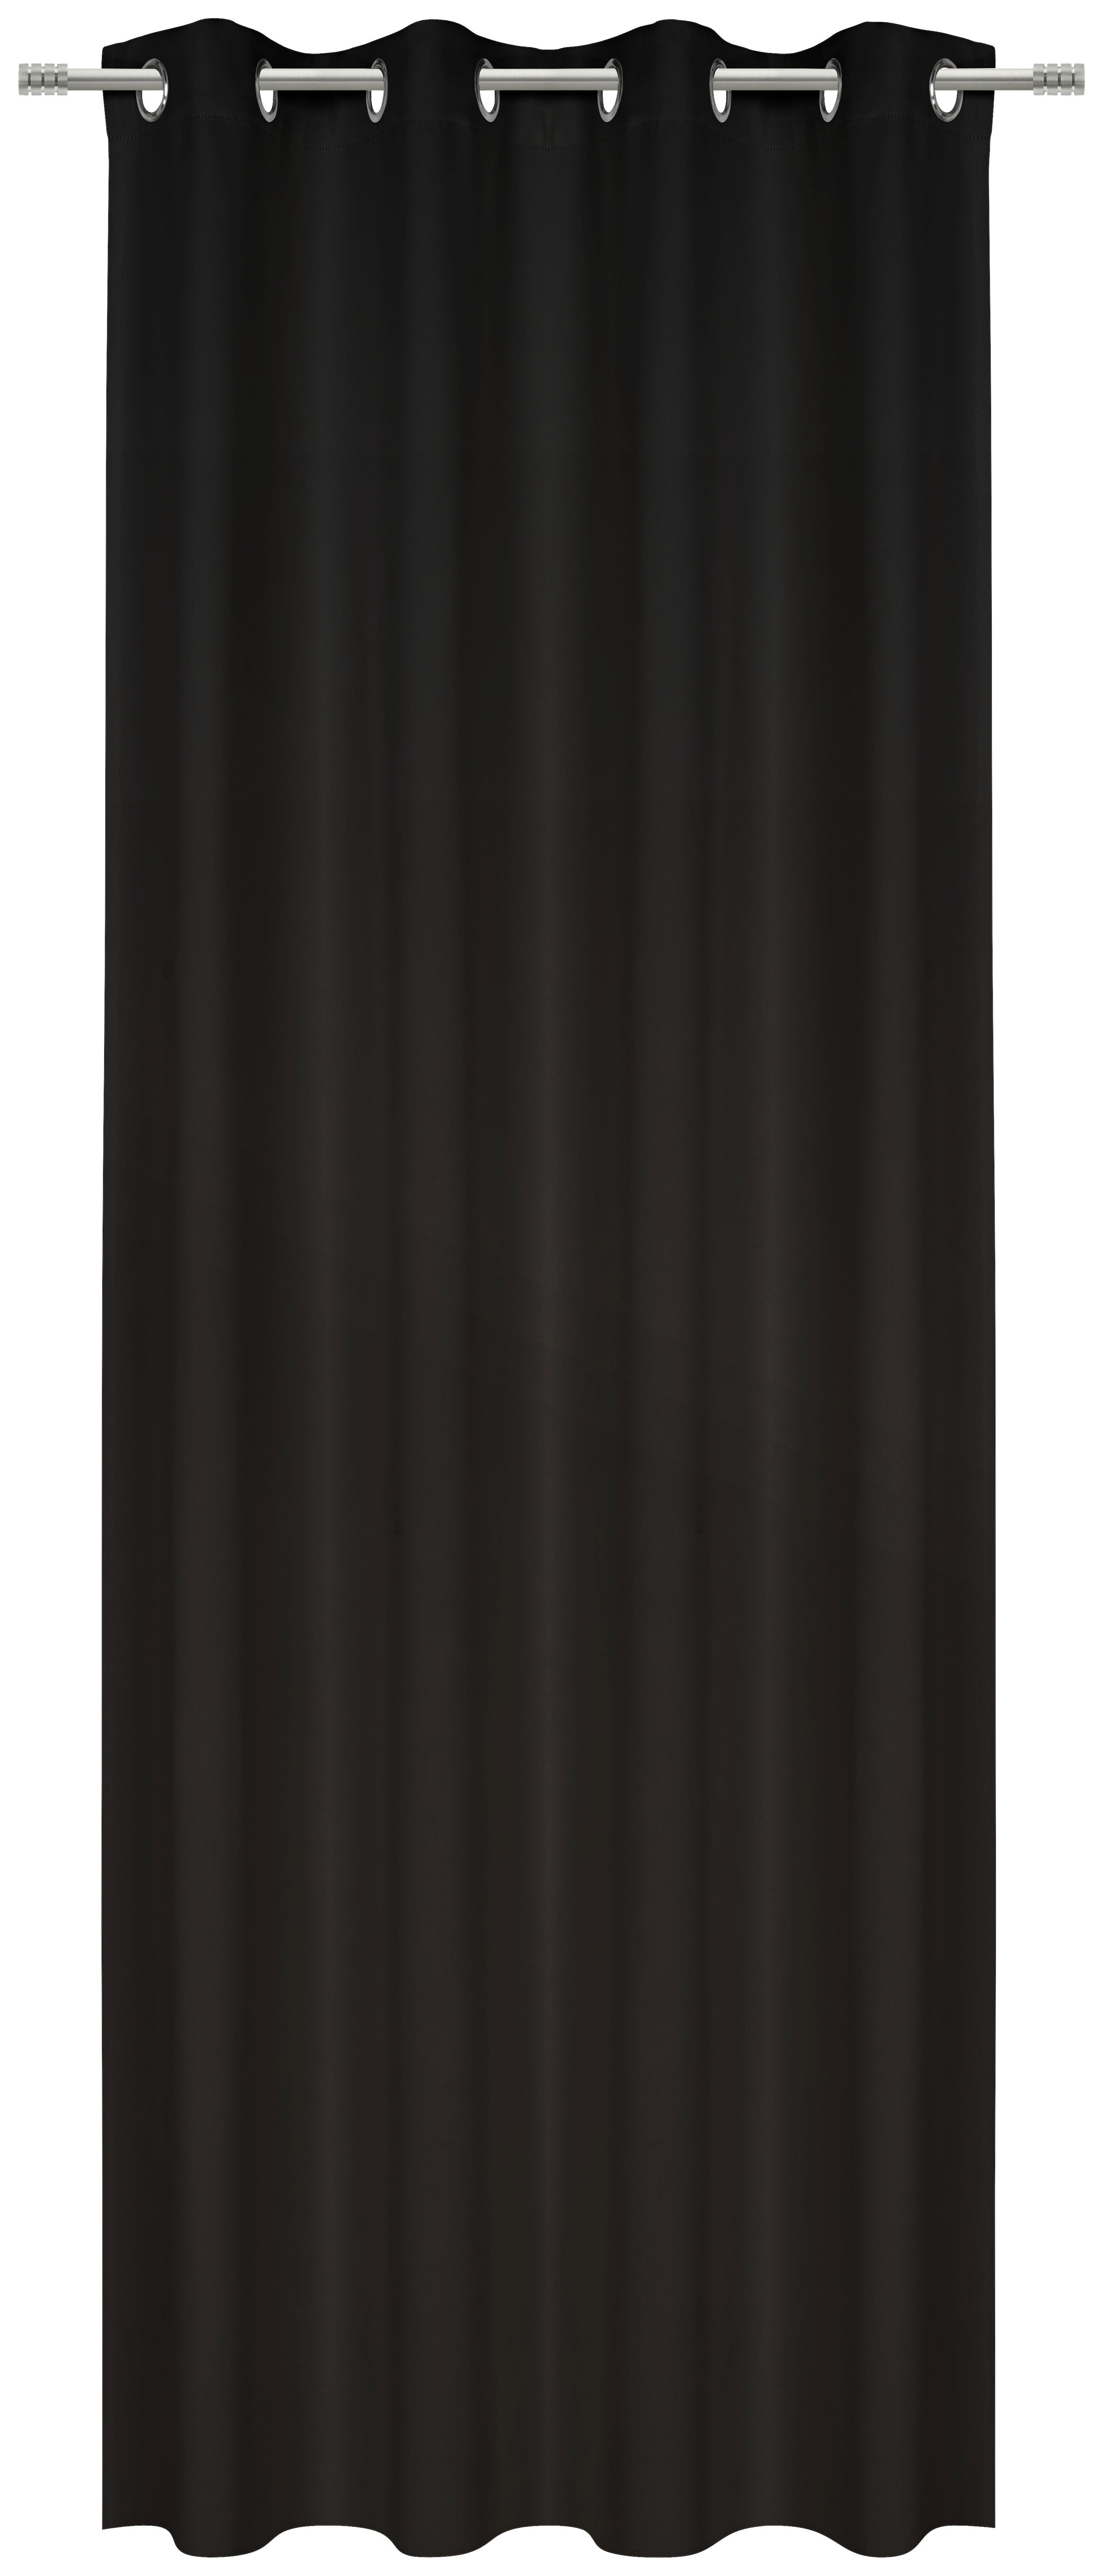 GOTOVA ZAVESA crna - crna, Osnovno, tekstil (140/245cm) - Esposa